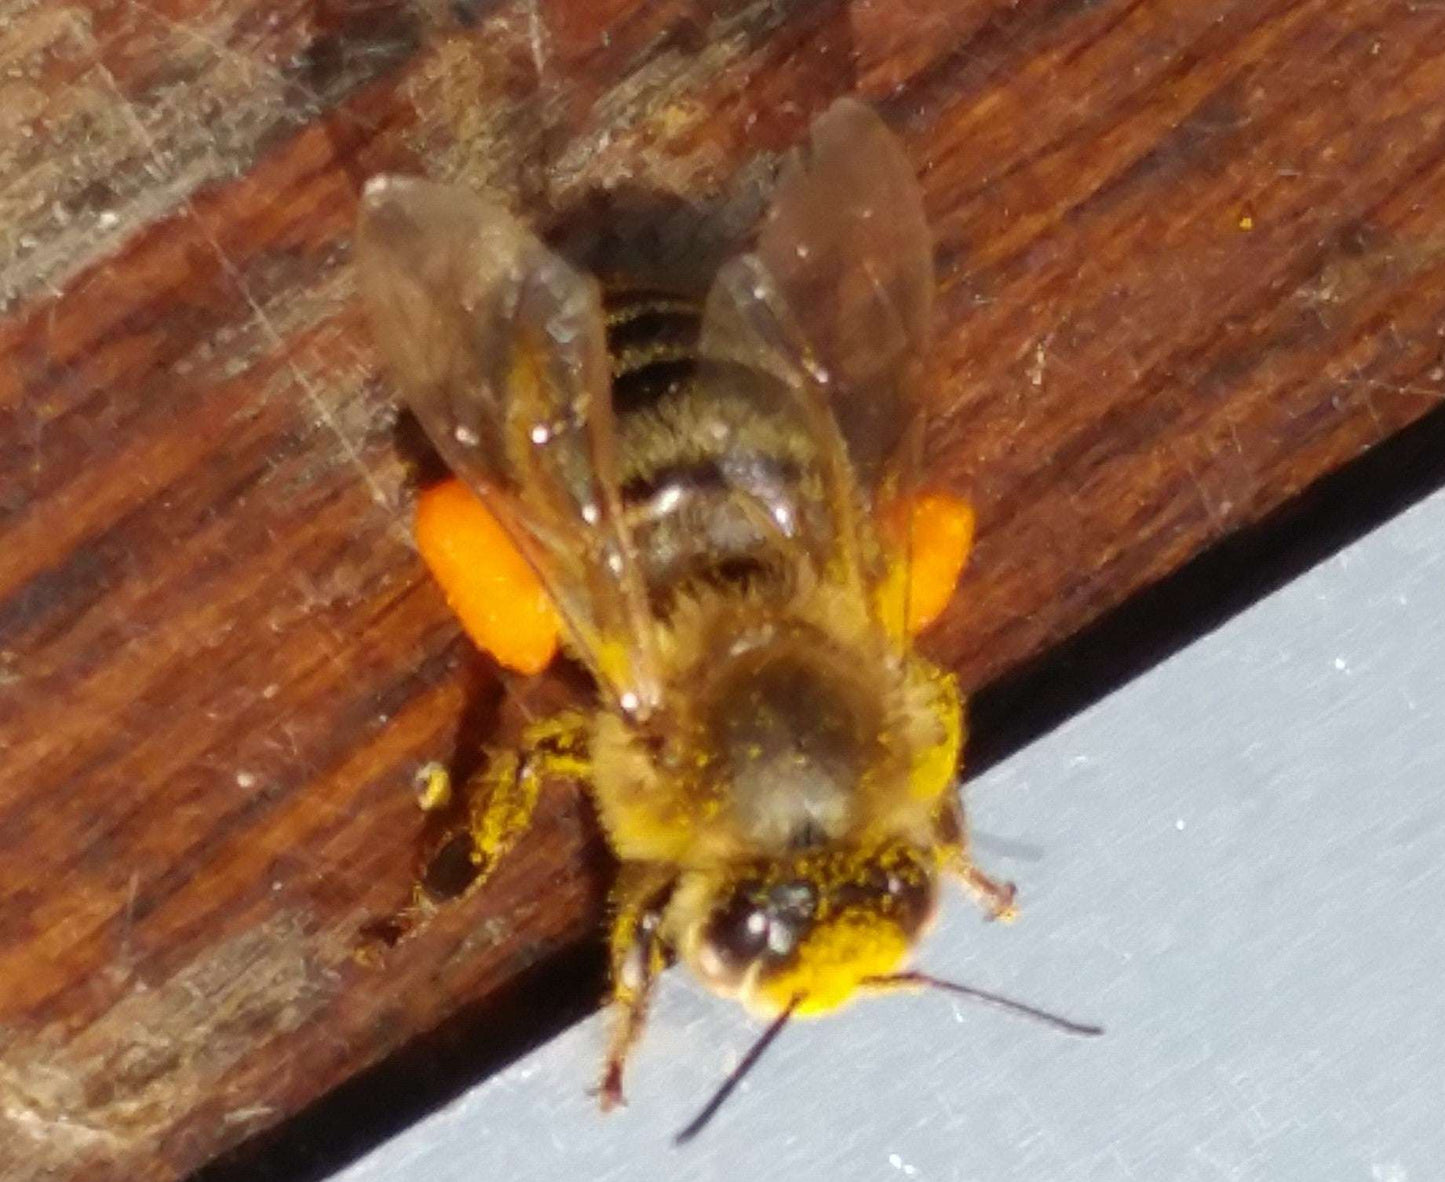 Raw Bee Pollen